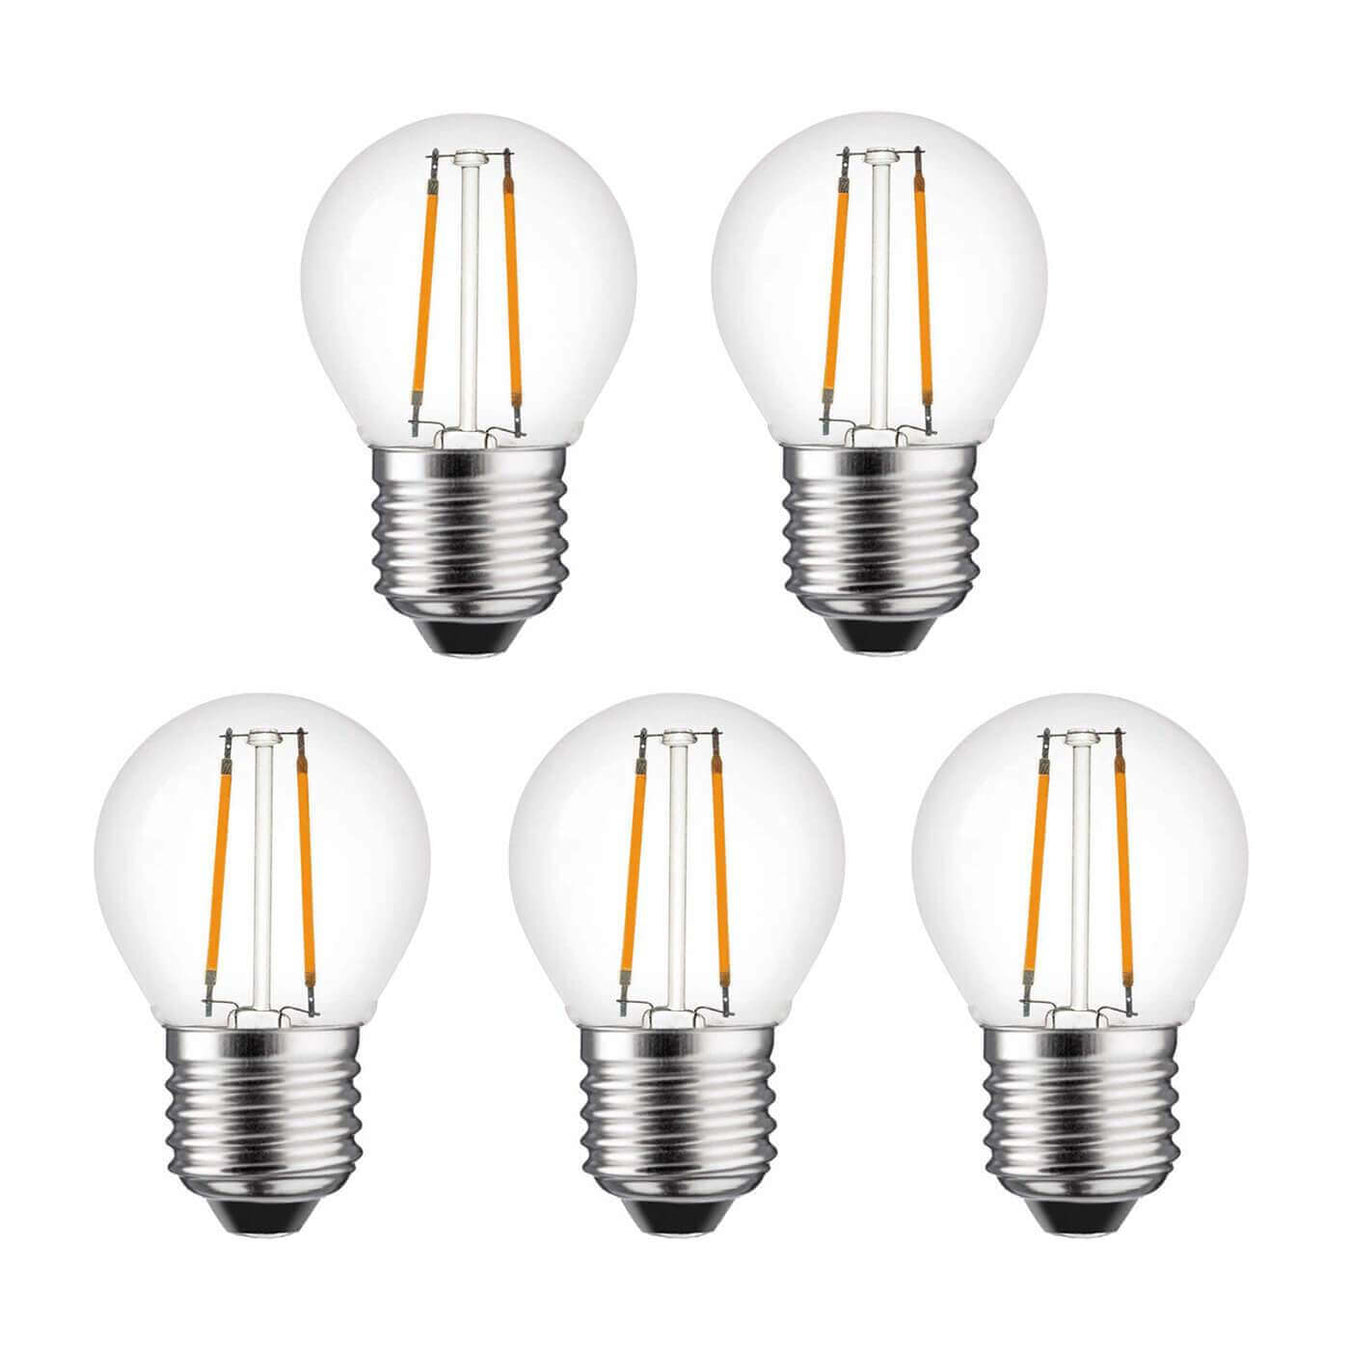 Light Bulb Sets